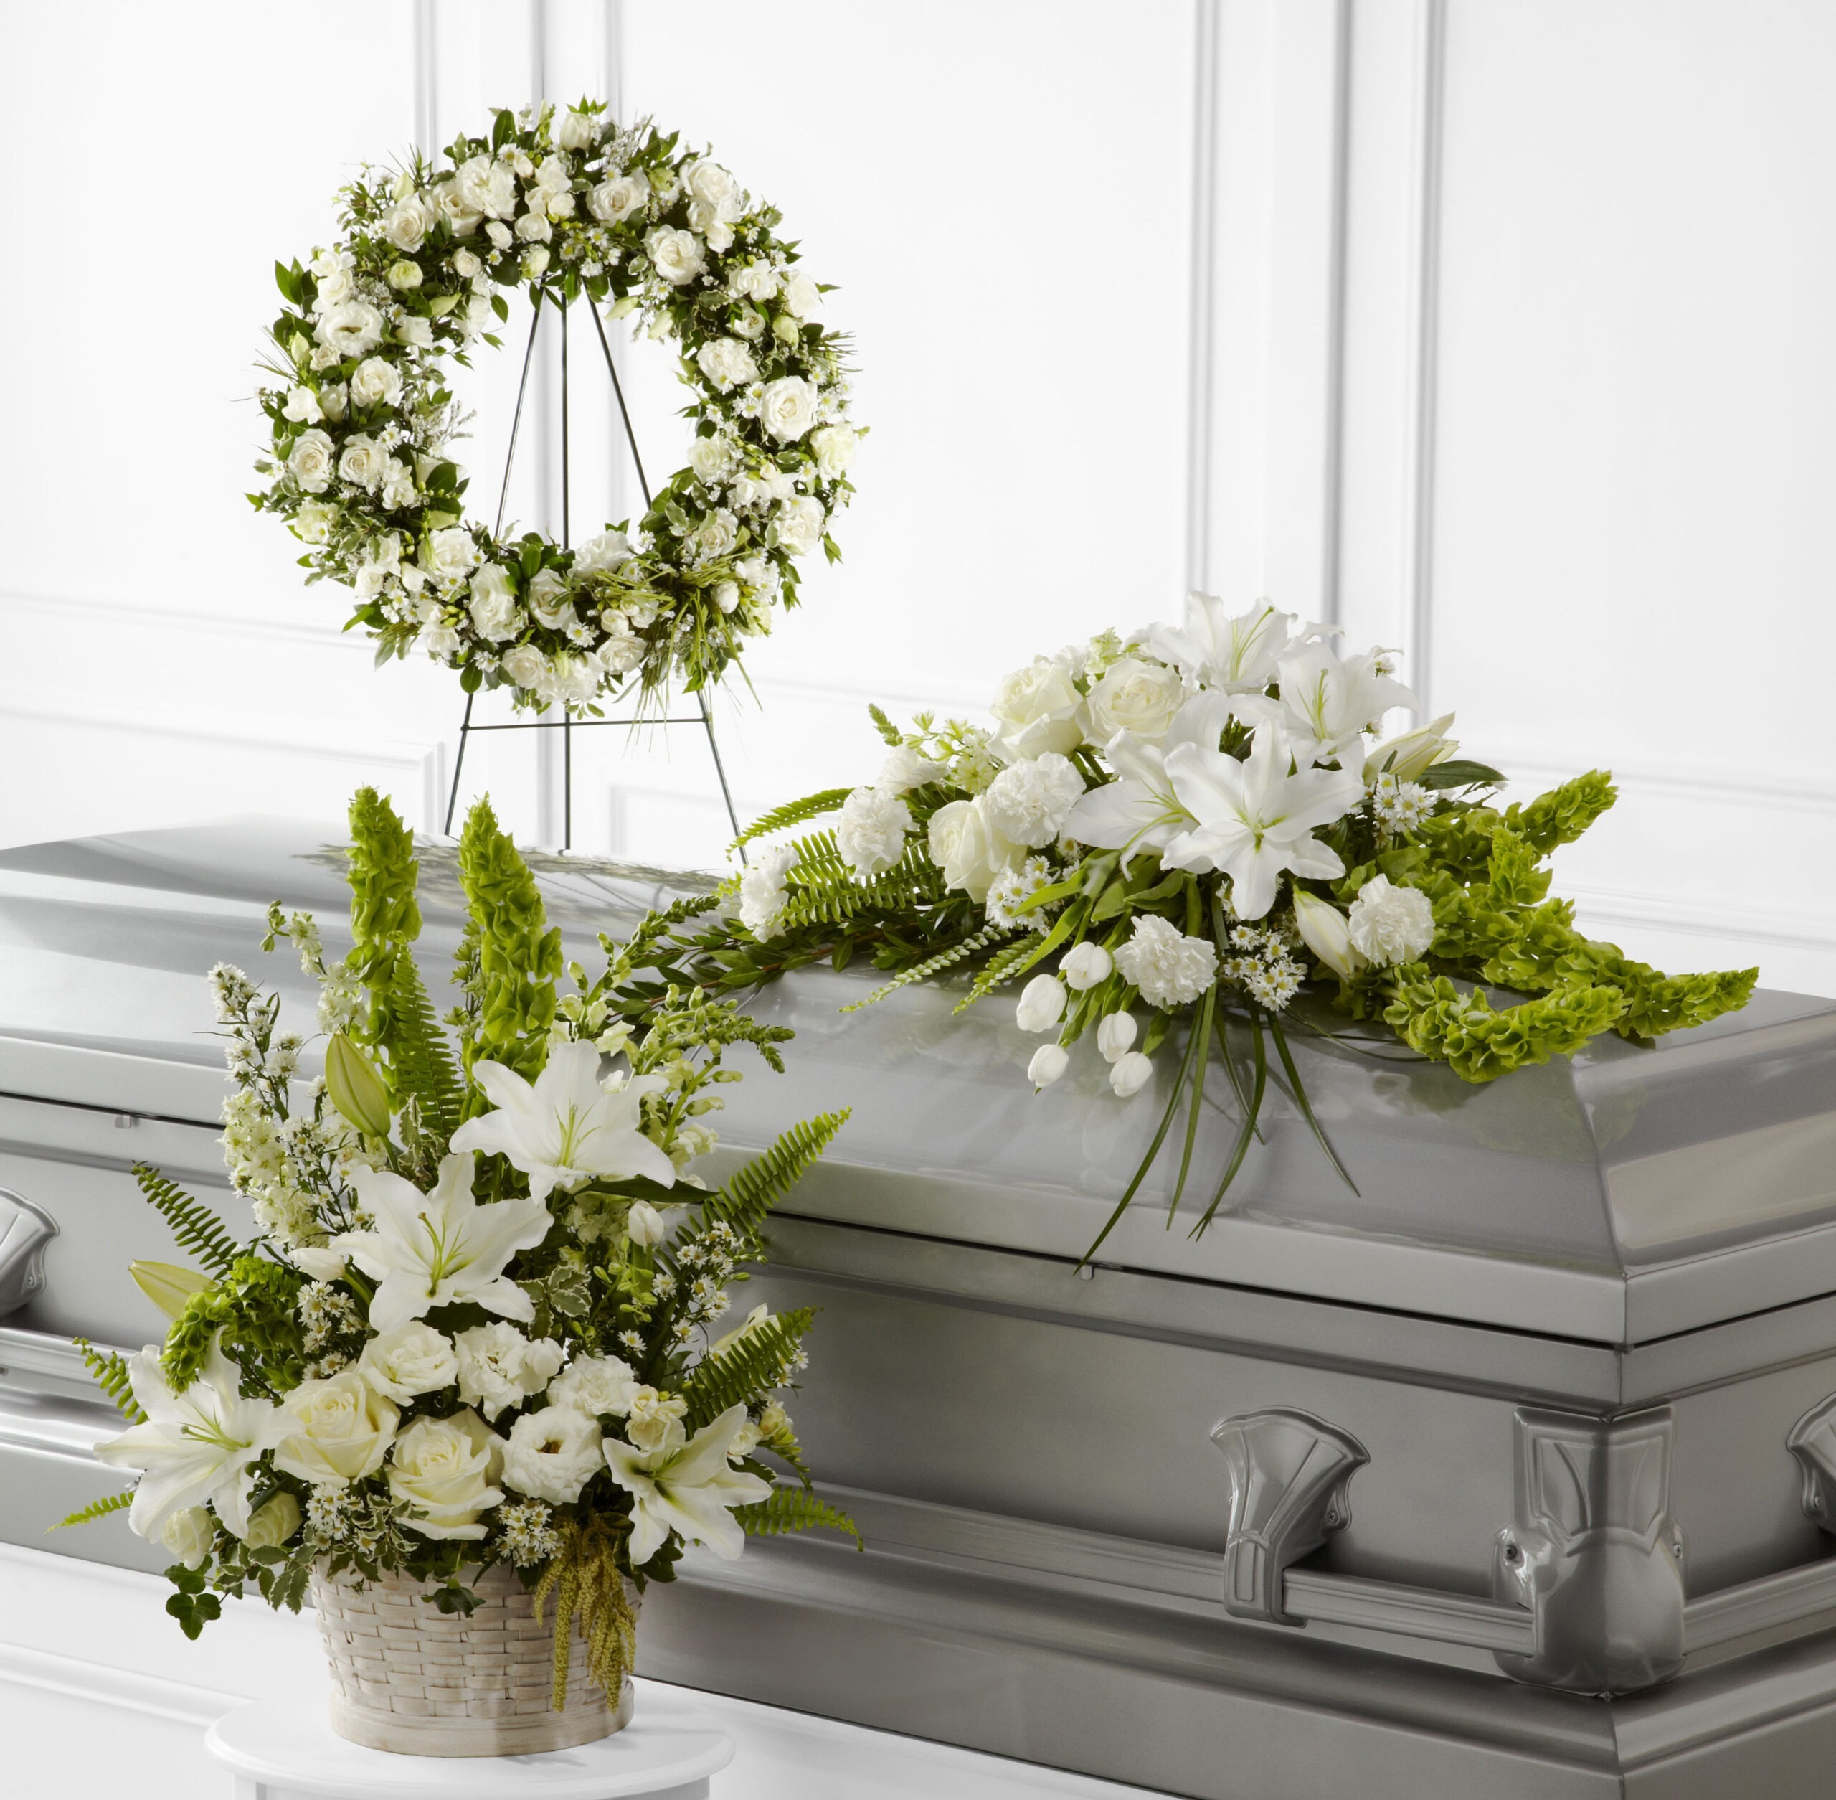 Funeral Fruit & Floral Baskets